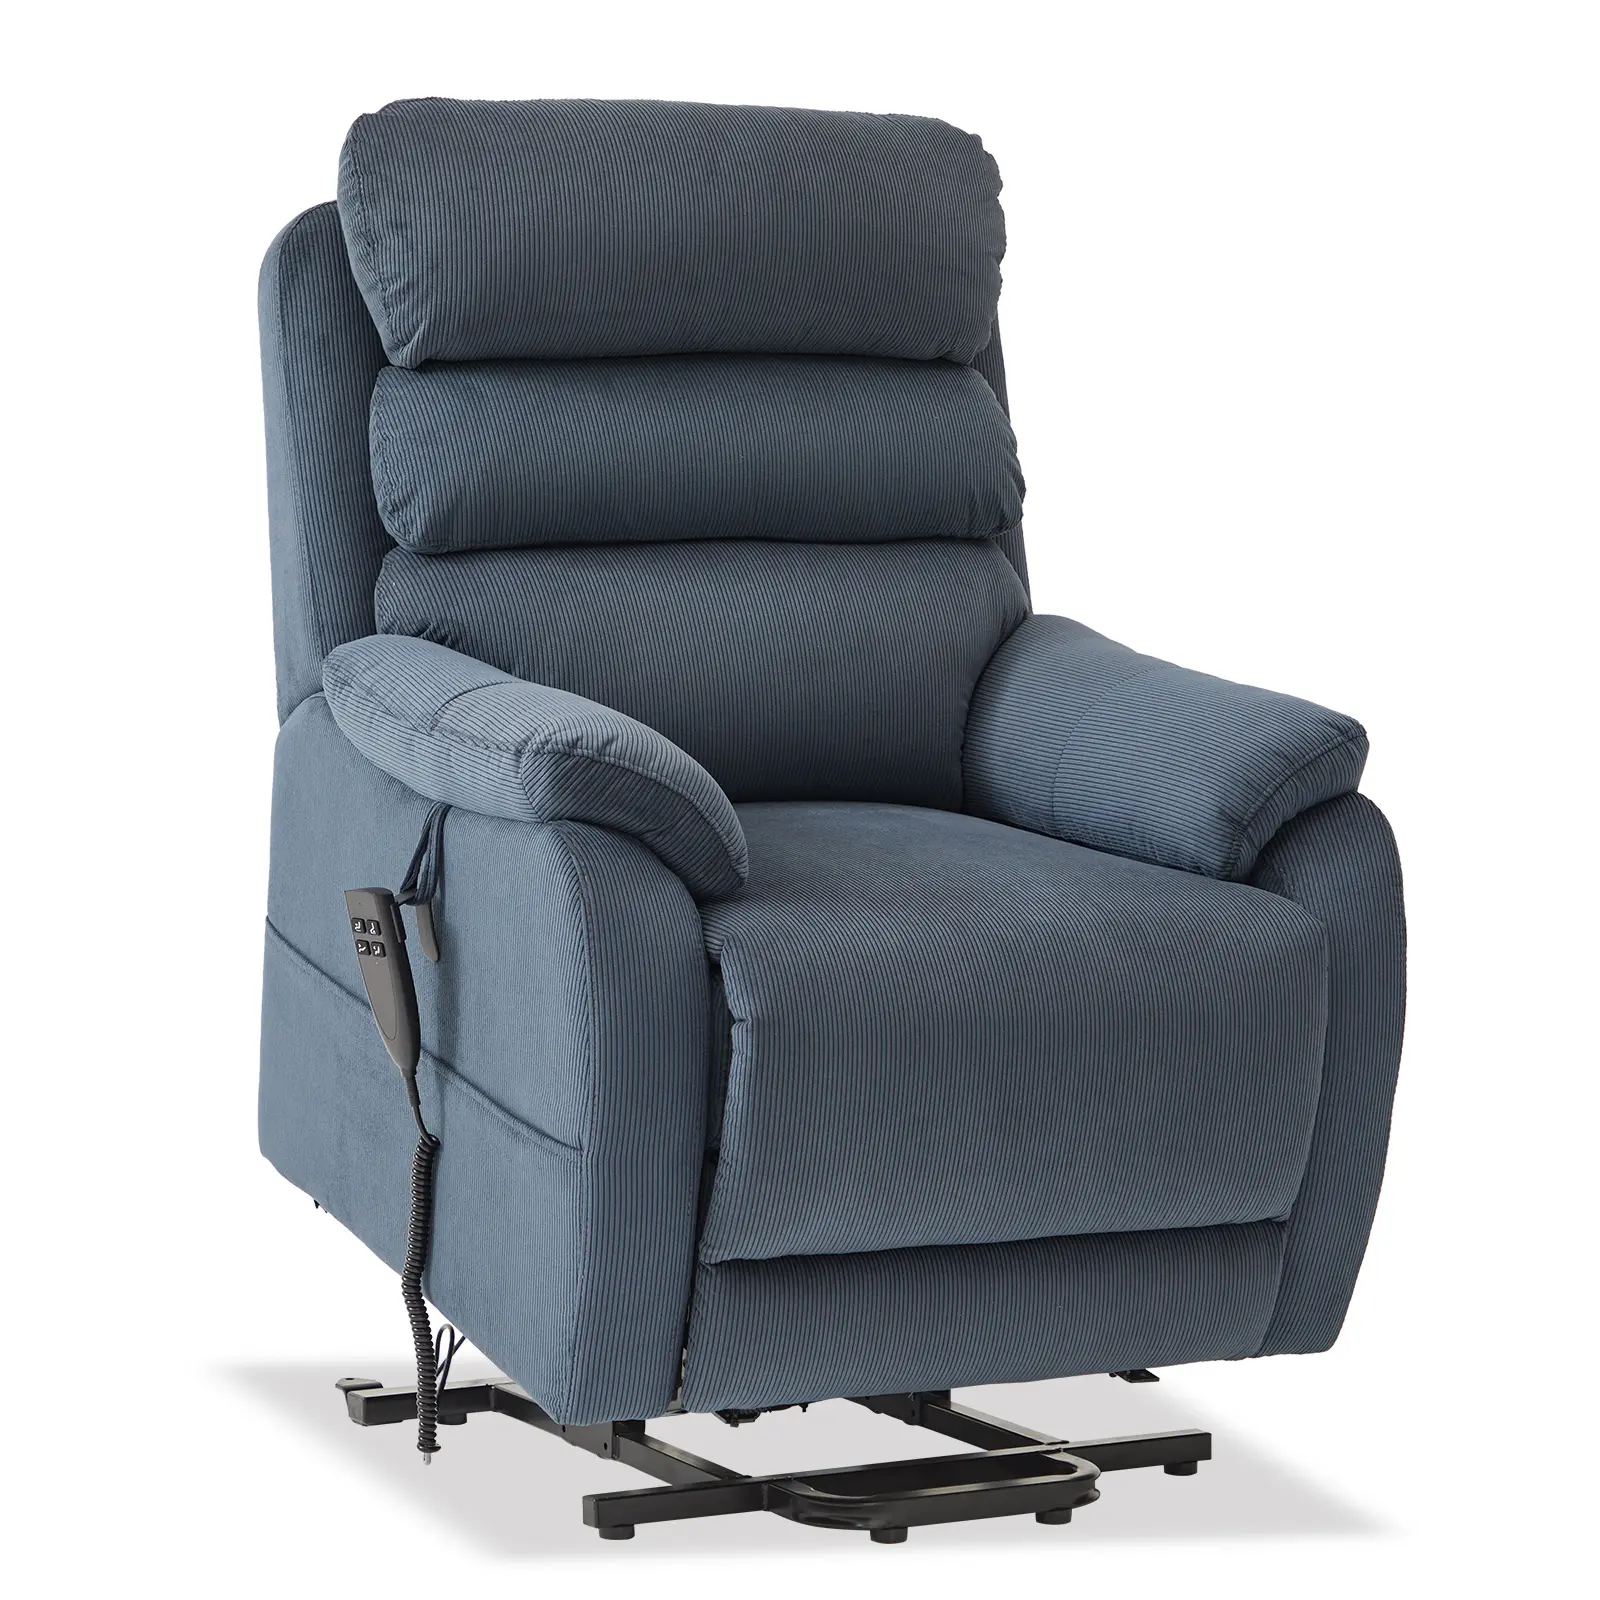 CJSmart sedia di sollevamento a casa reclinabile per persone corte, divano con ascensore piatto con regolazione della posizione infinita e tasca laterale